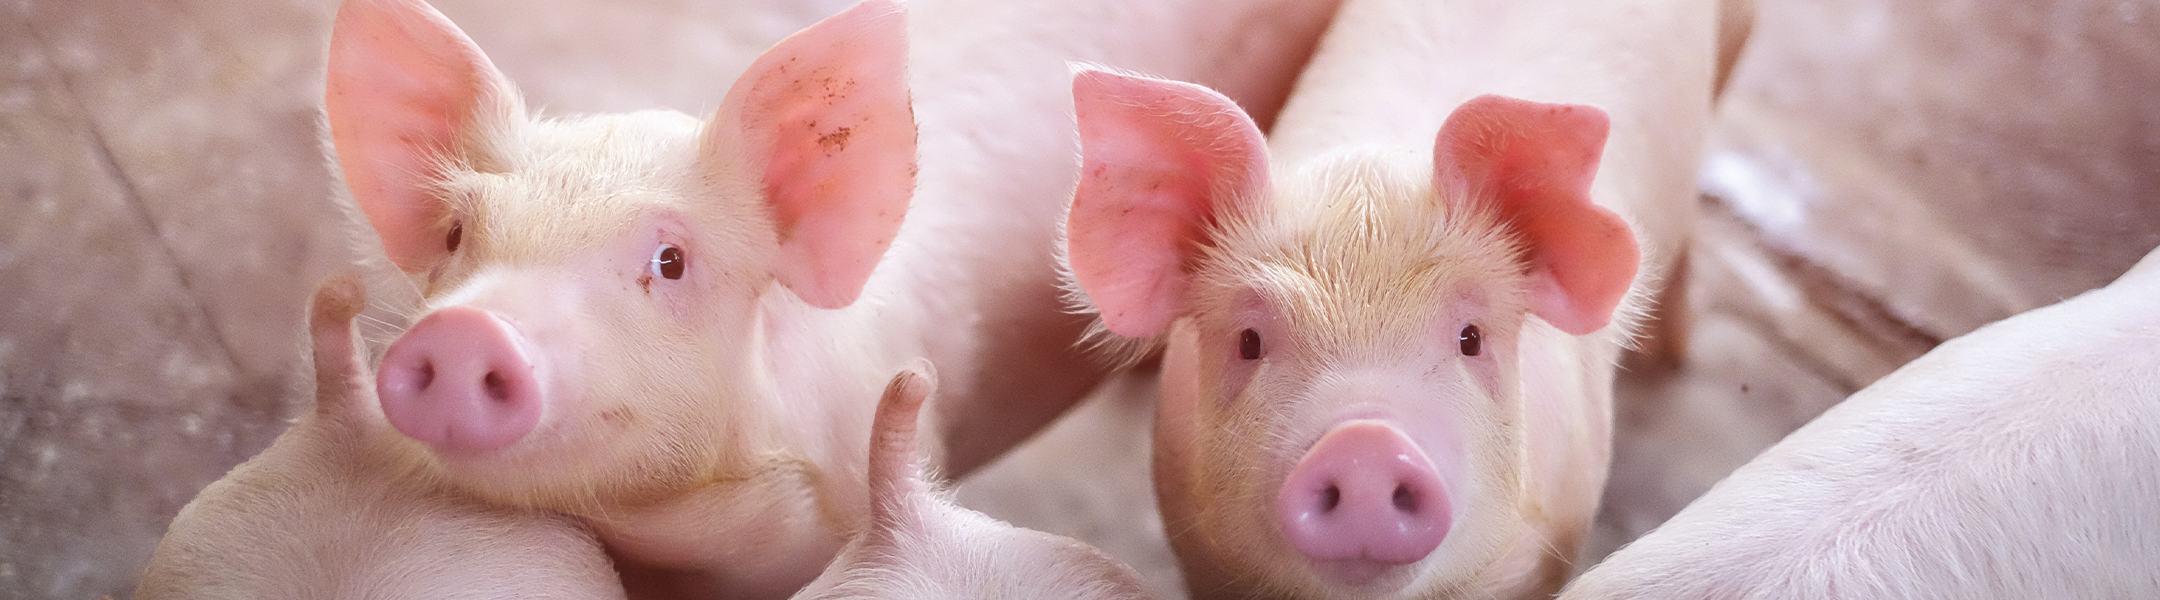 En dyrlæge kontrollerer sundhedstilstanden i en svinebesætning.